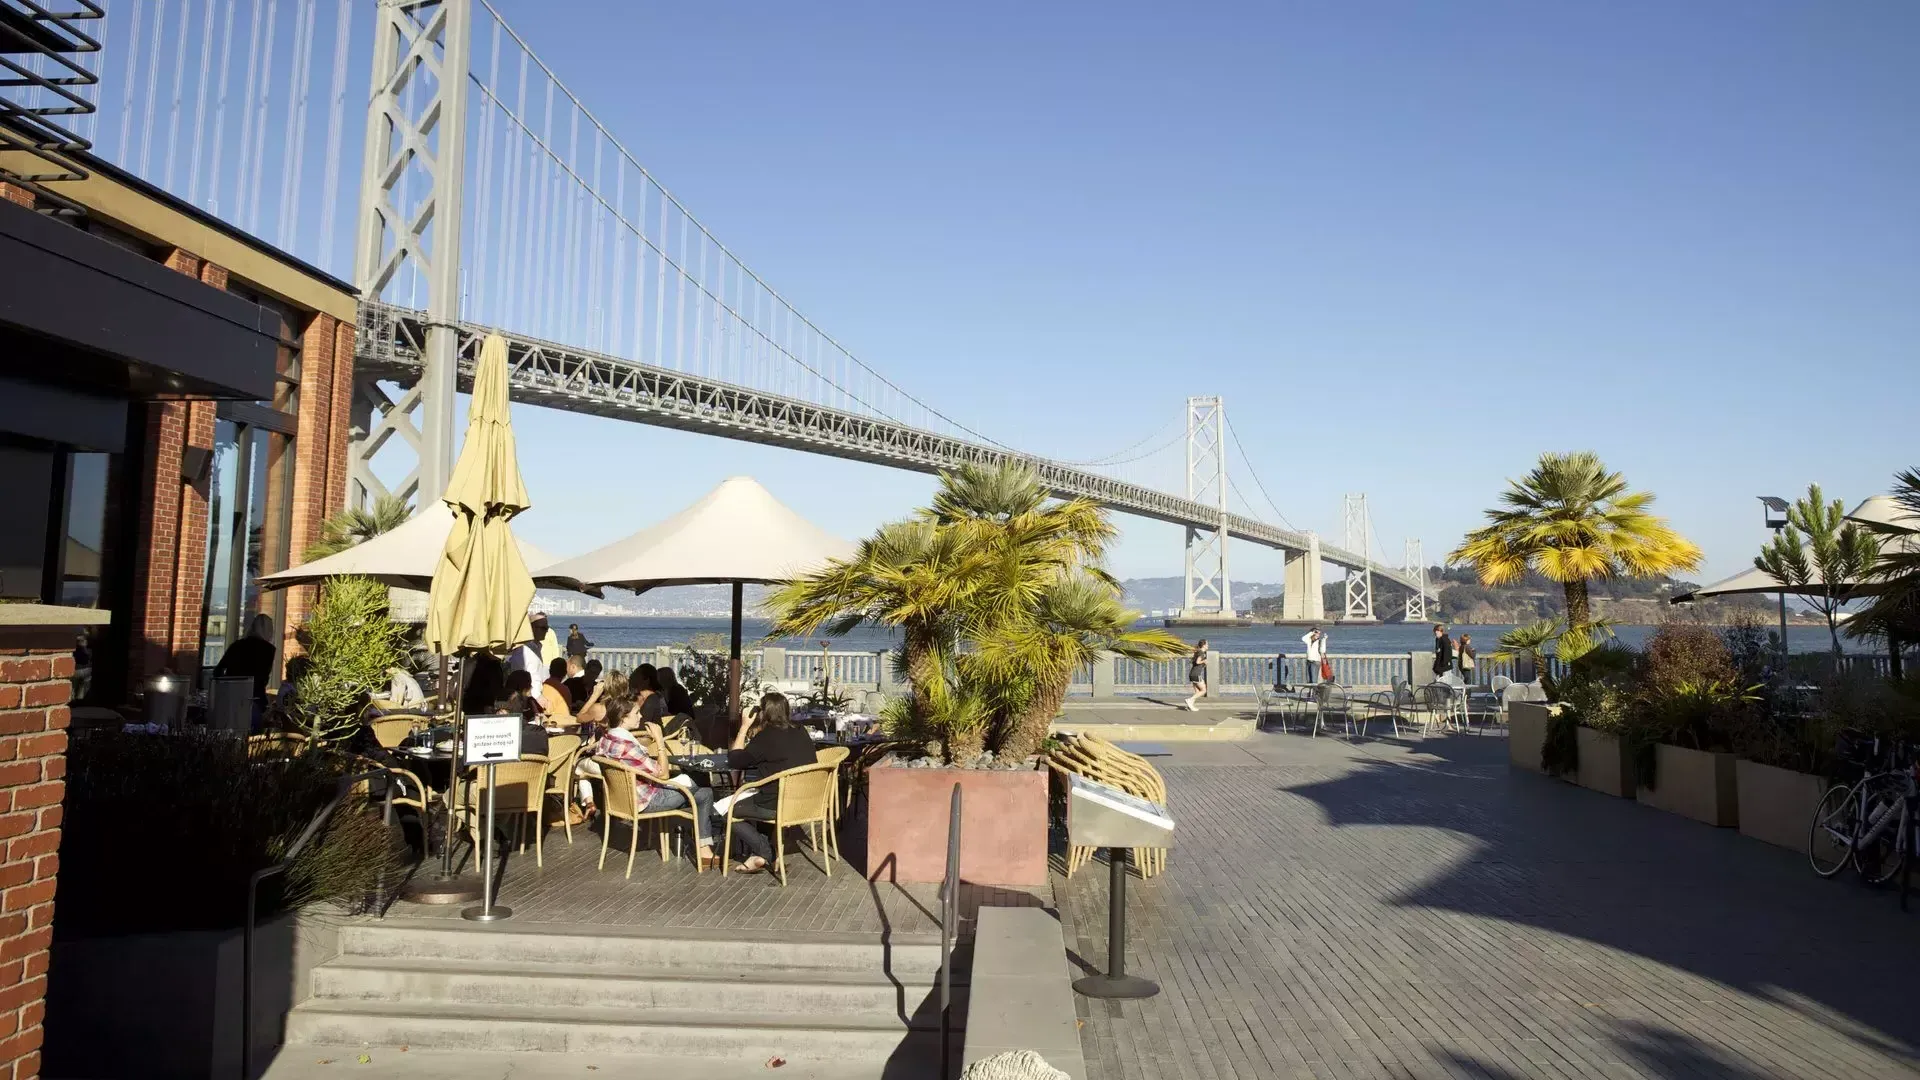 Os clientes desfrutam de uma refeição à beira-mar de São Francisco.